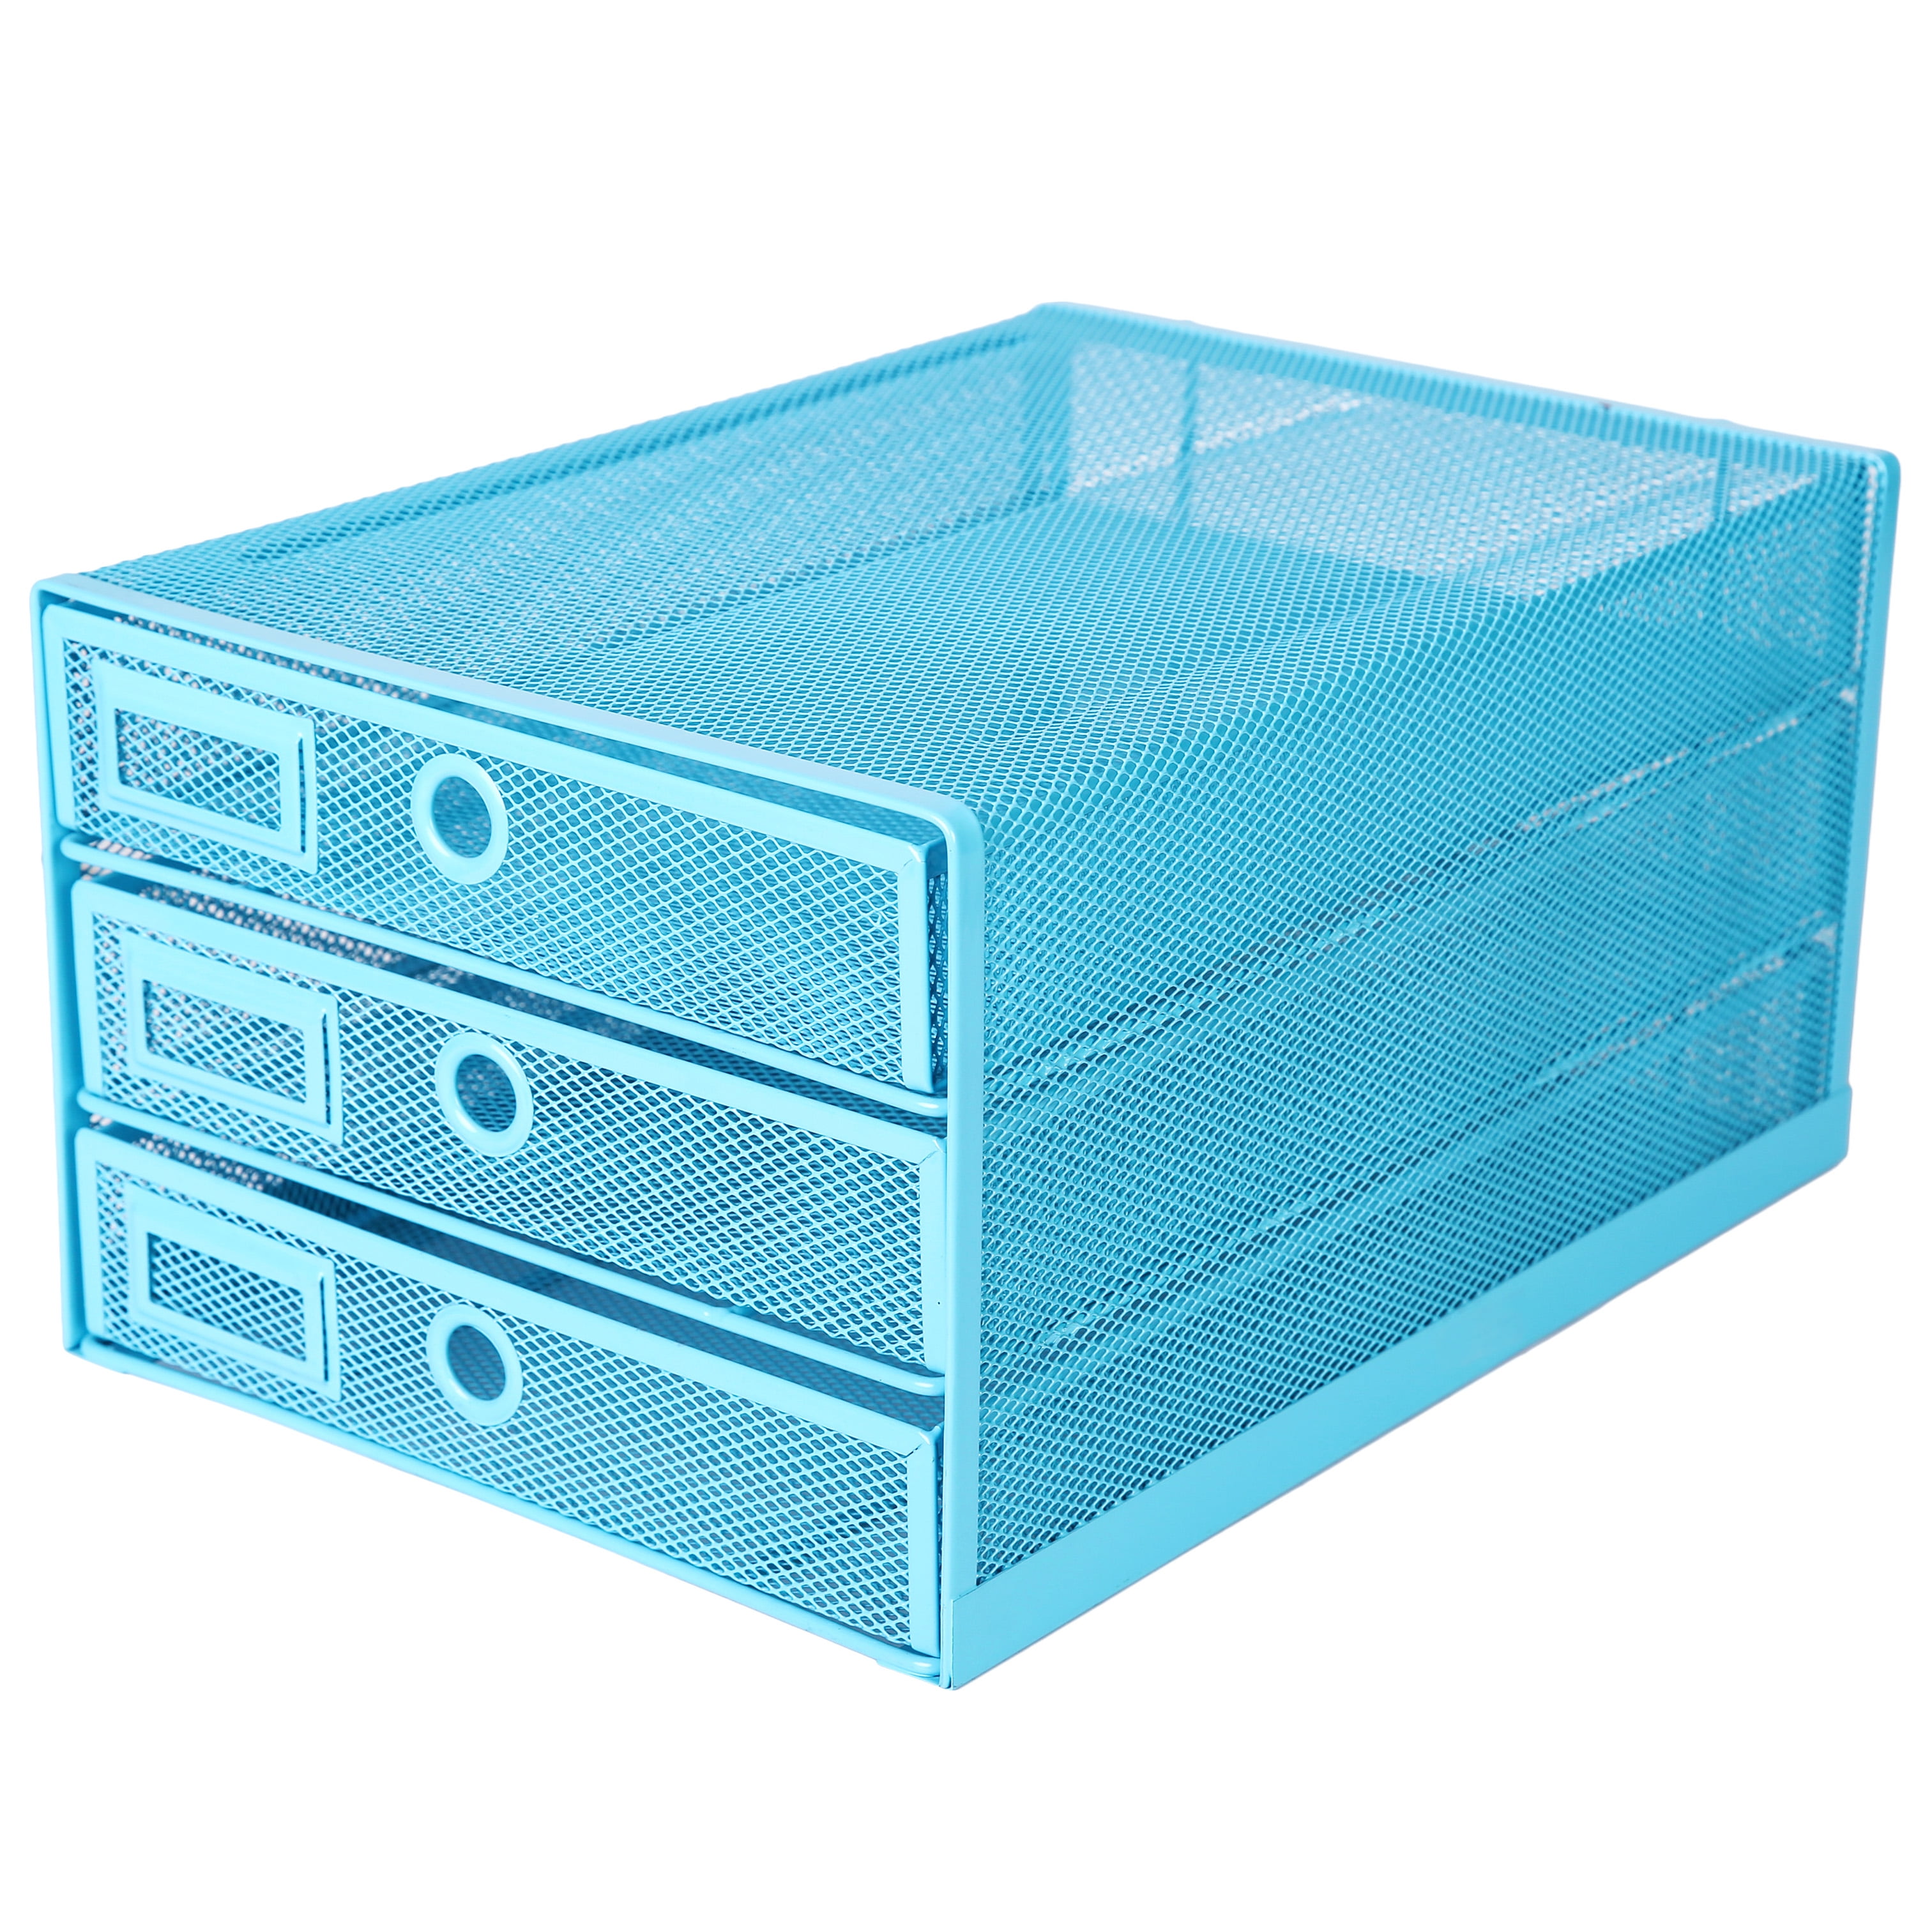 ANNOVA Wire Mesh Desk Organizer 3 Drawer Sorter Blue